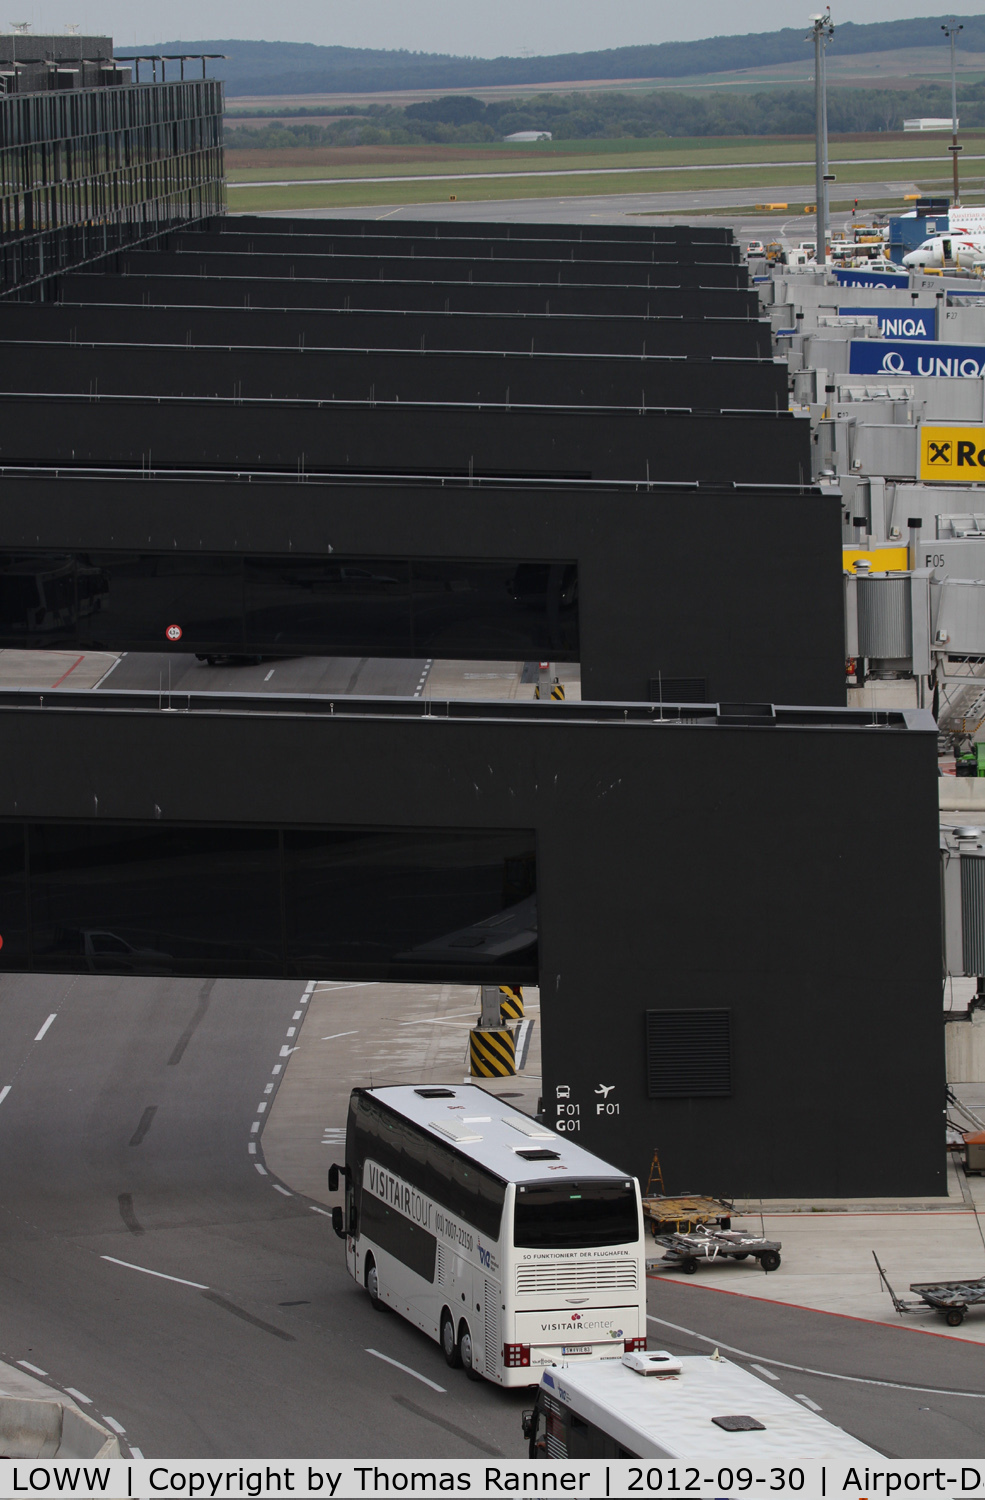 Vienna International Airport, Vienna Austria (LOWW) - the new CheckIn 3